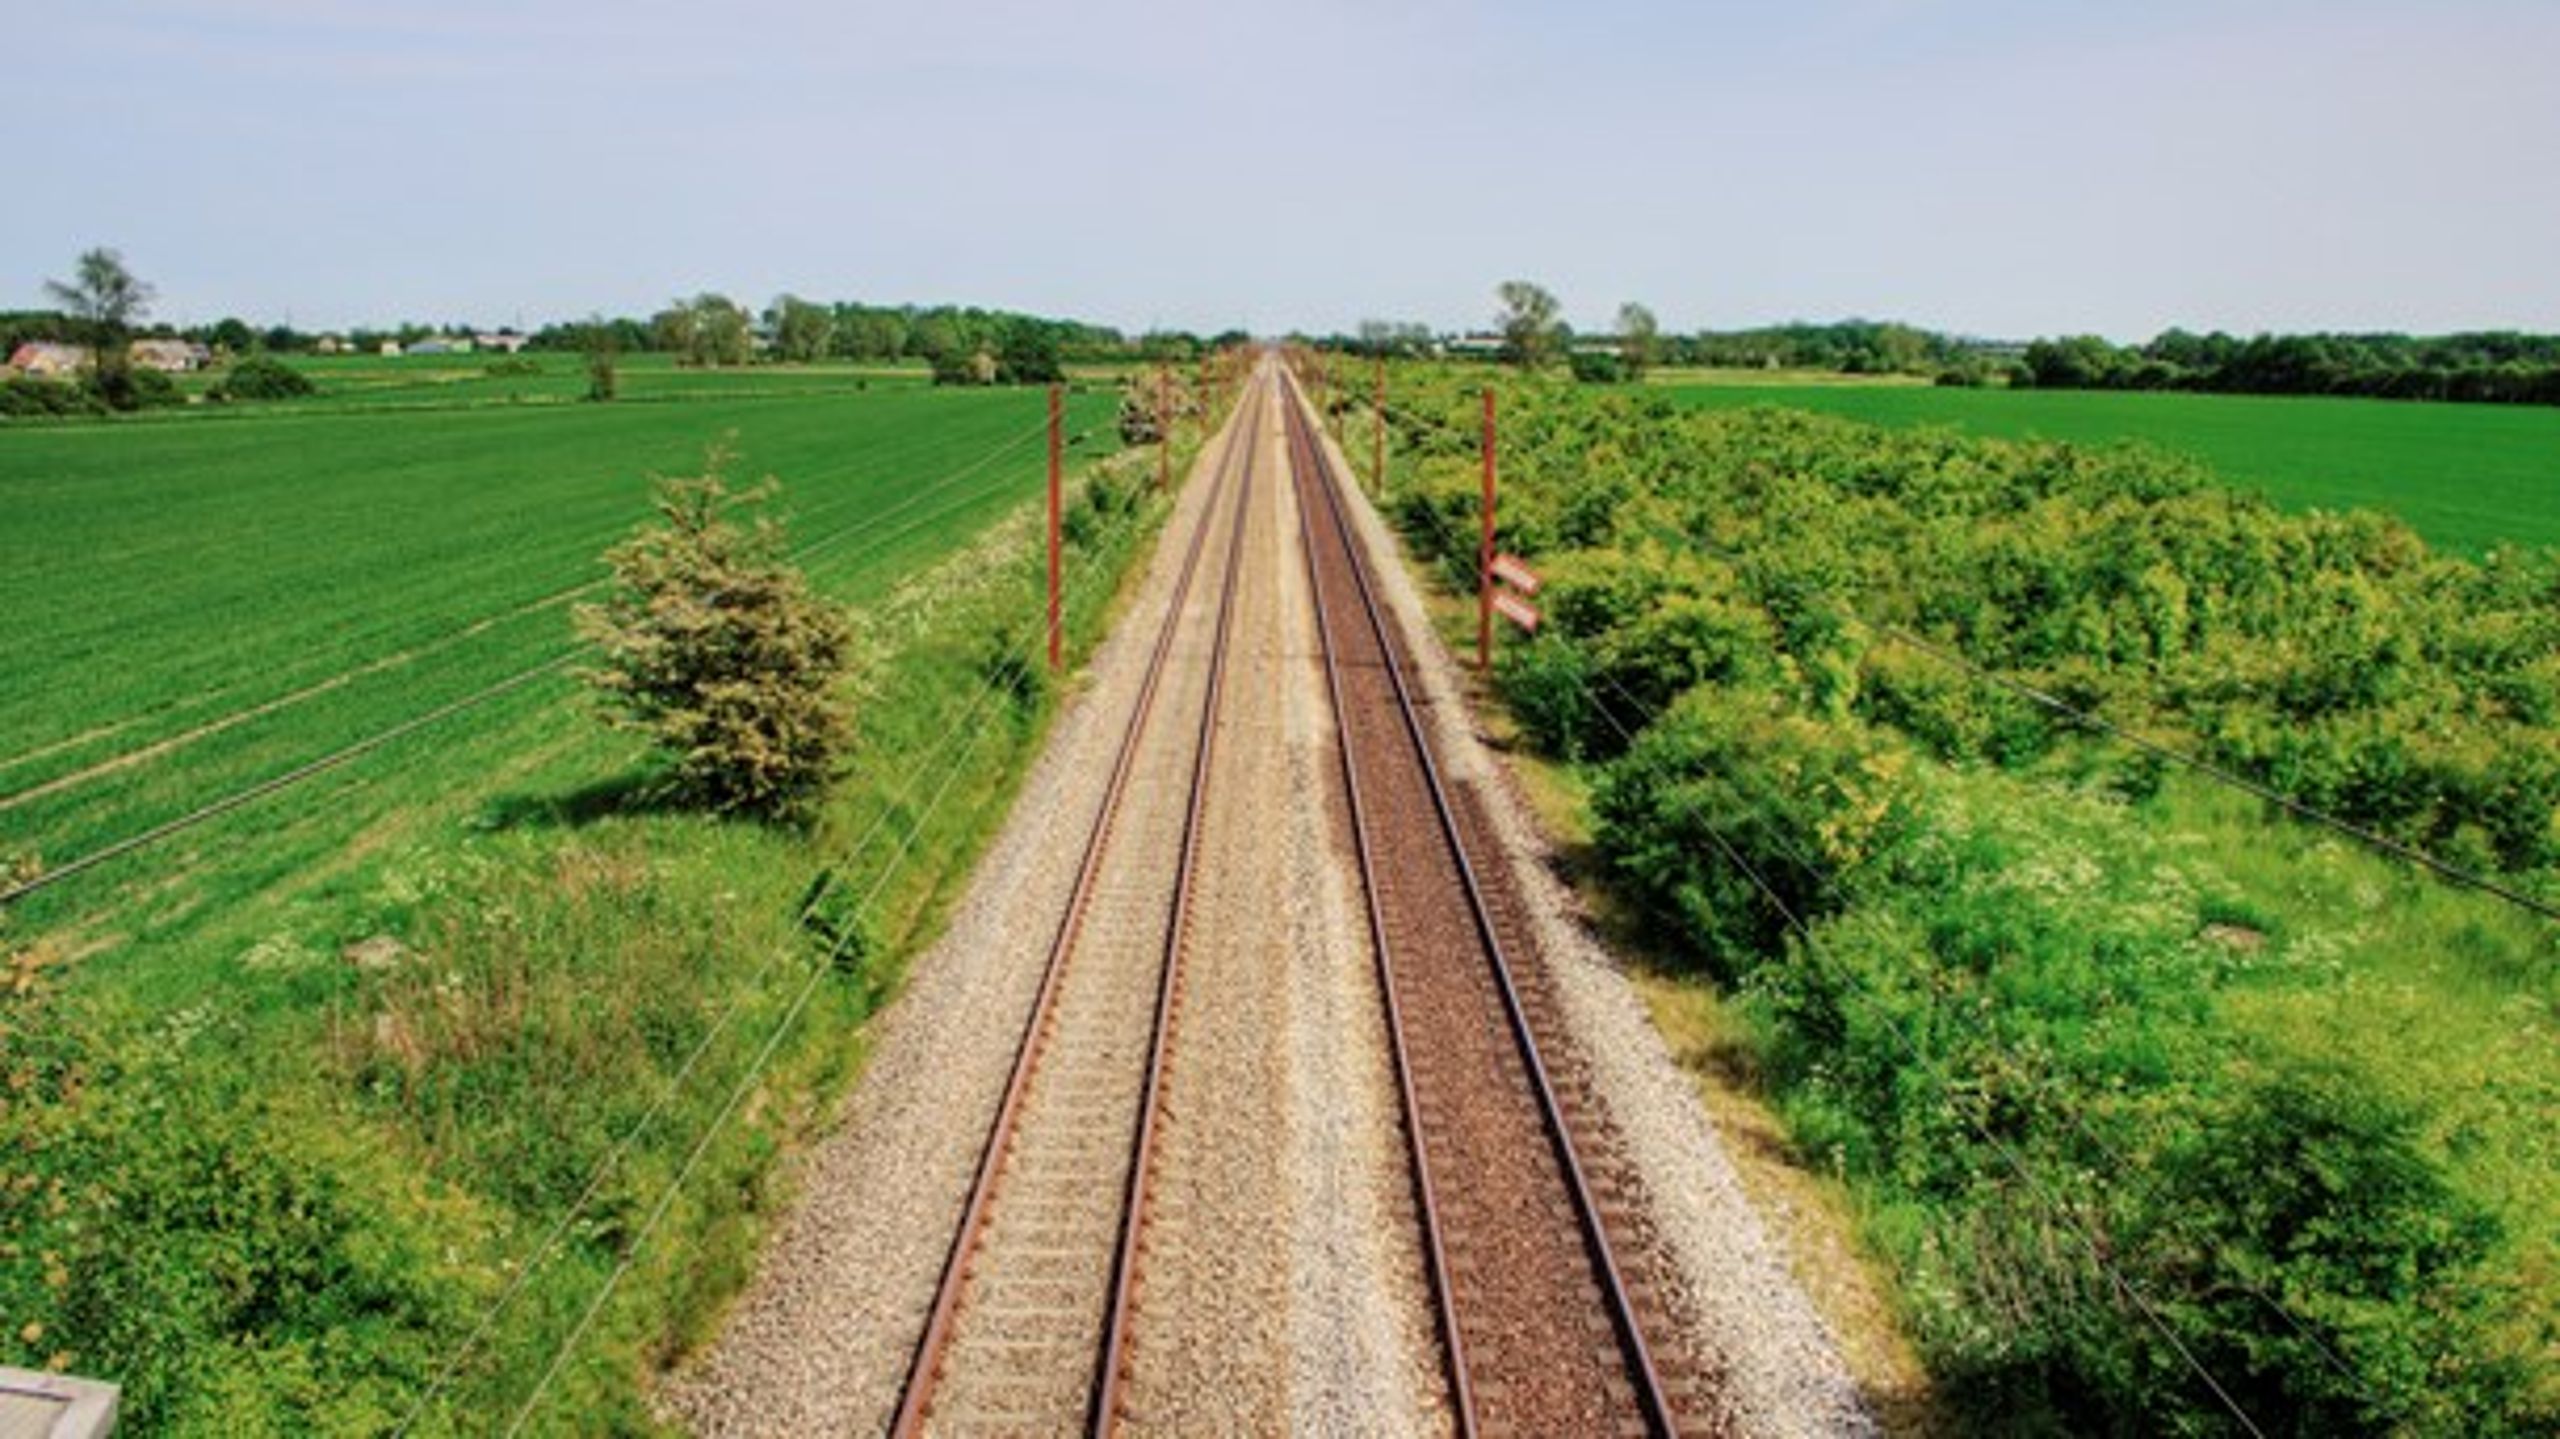 Der bliver alligevel ikke tomme skinner i Nordjylland, sikrer ny overenskomst for jernbane-medarbejdere.